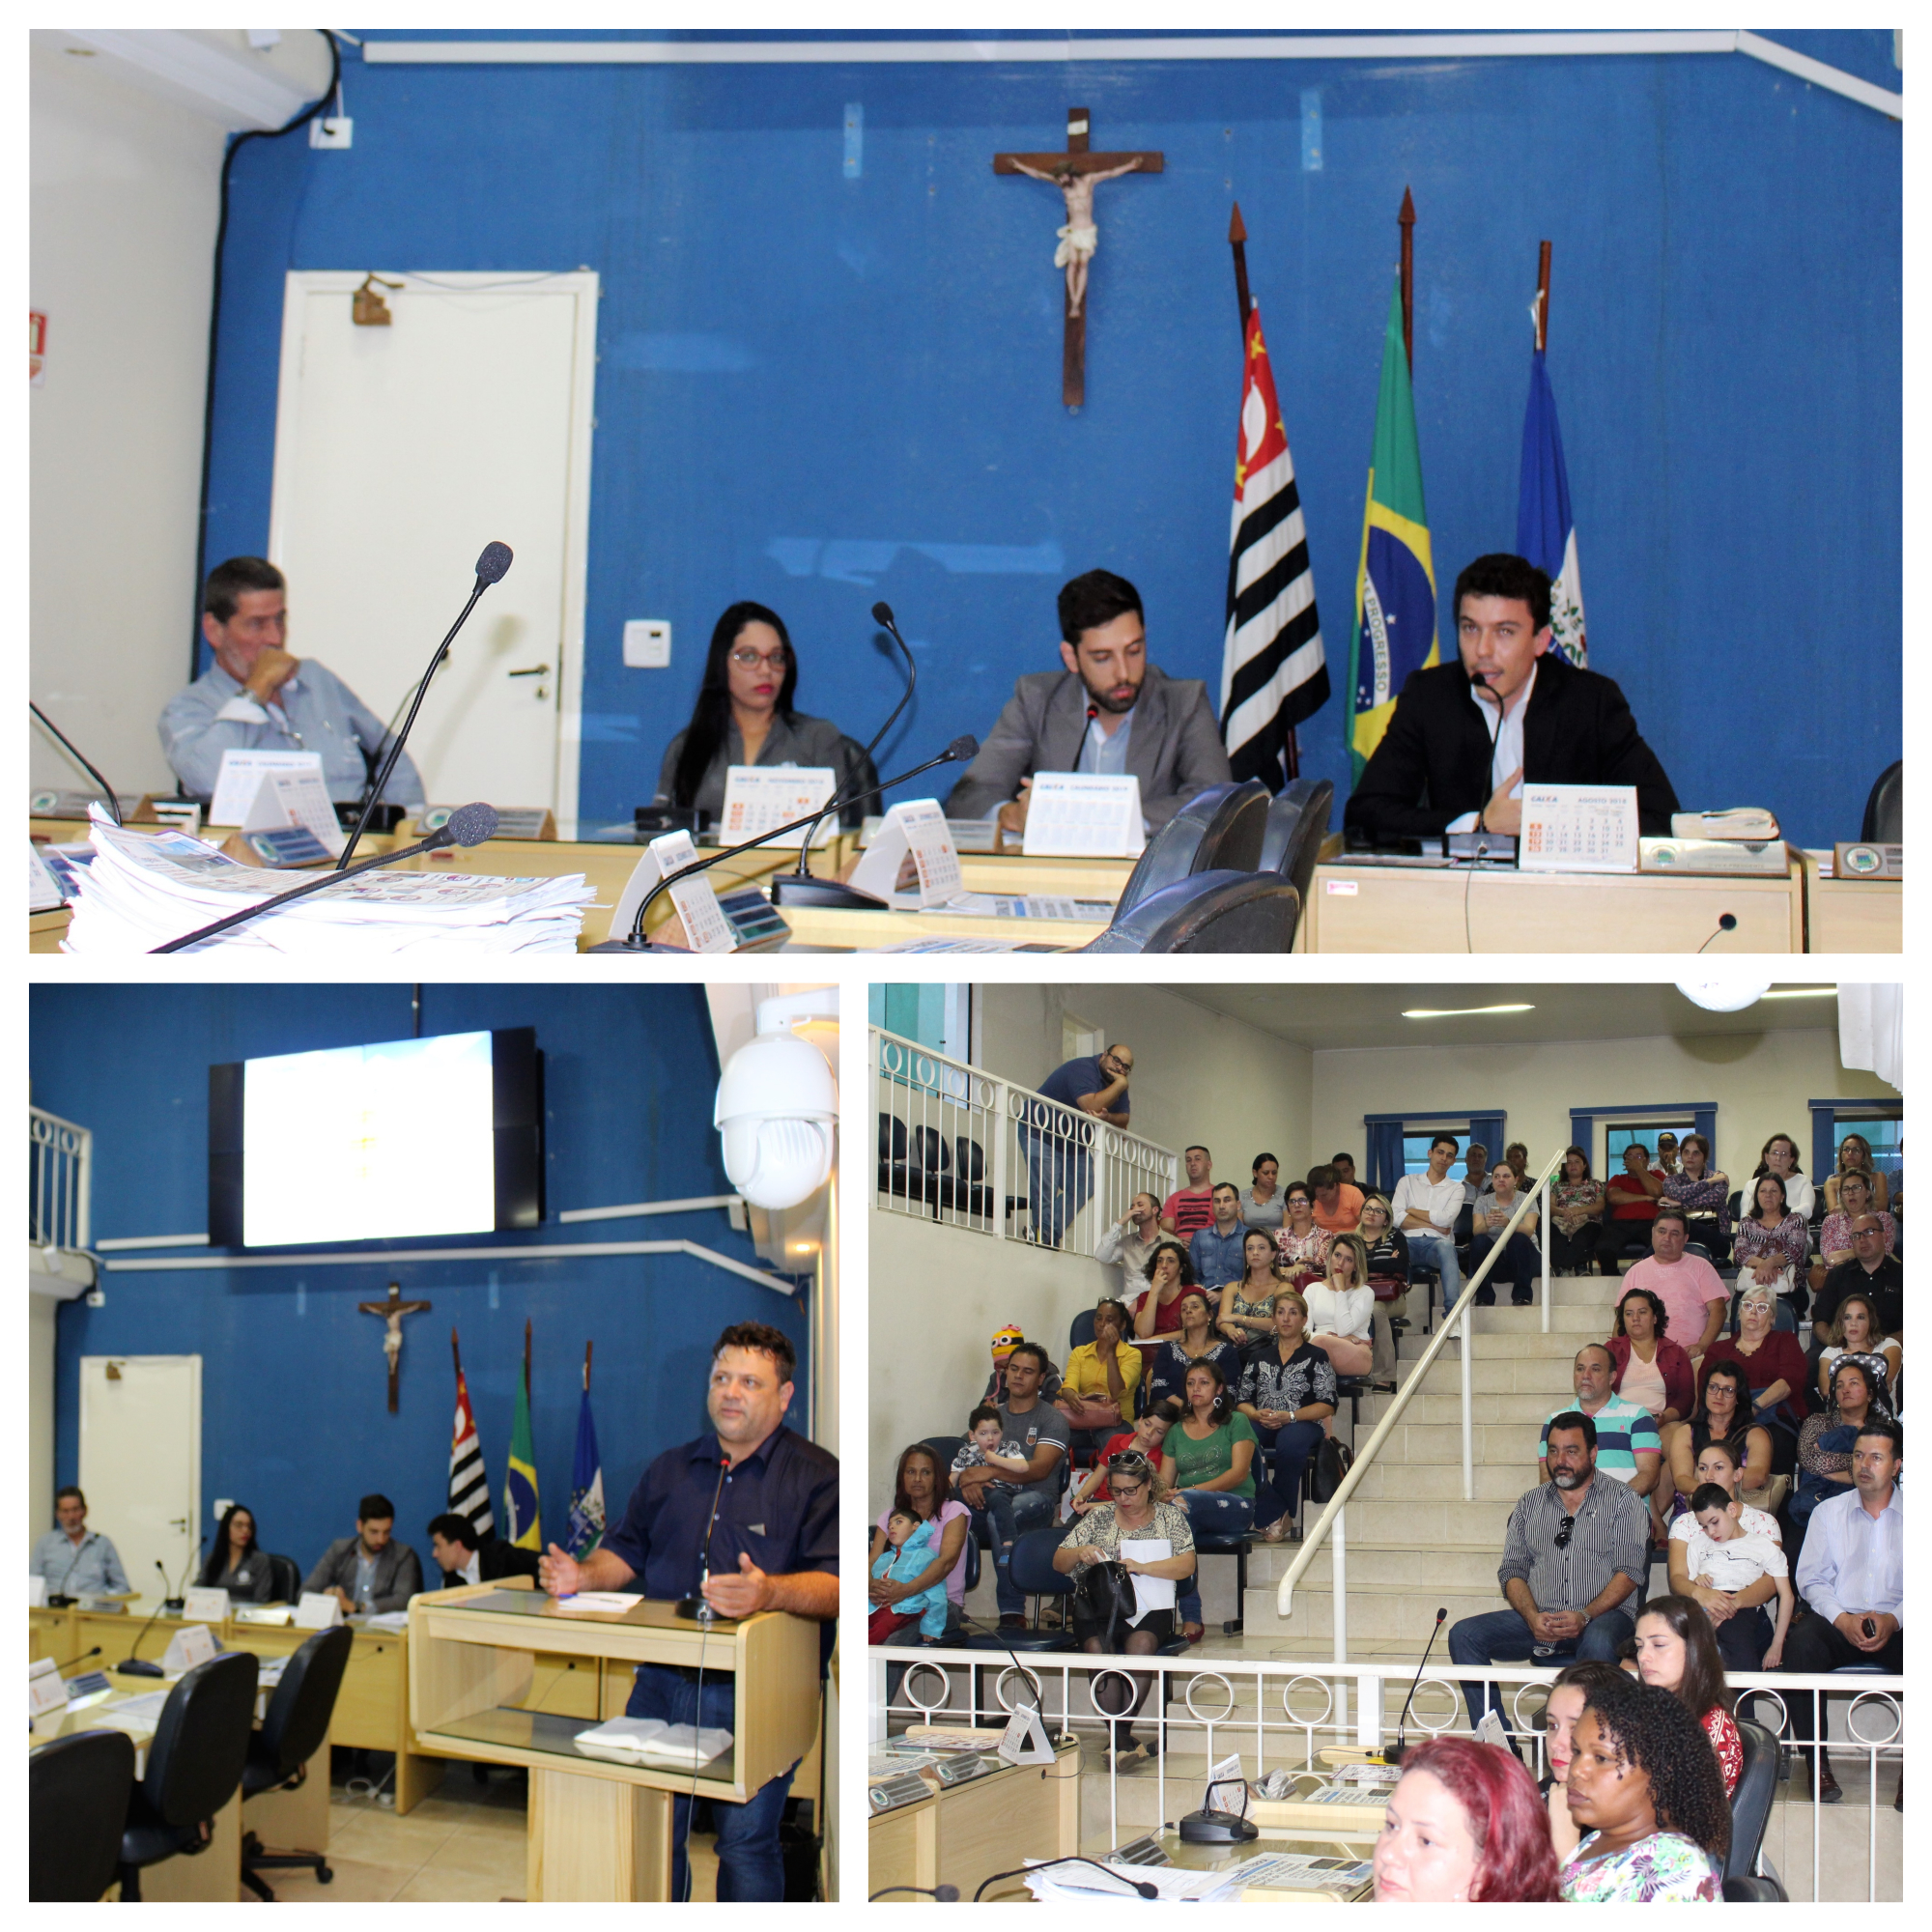 Câmara Municipal recebe comunidade para esclarecimentos sobre funcionamento e implantação de uma unidade da Apae em Ibiúna